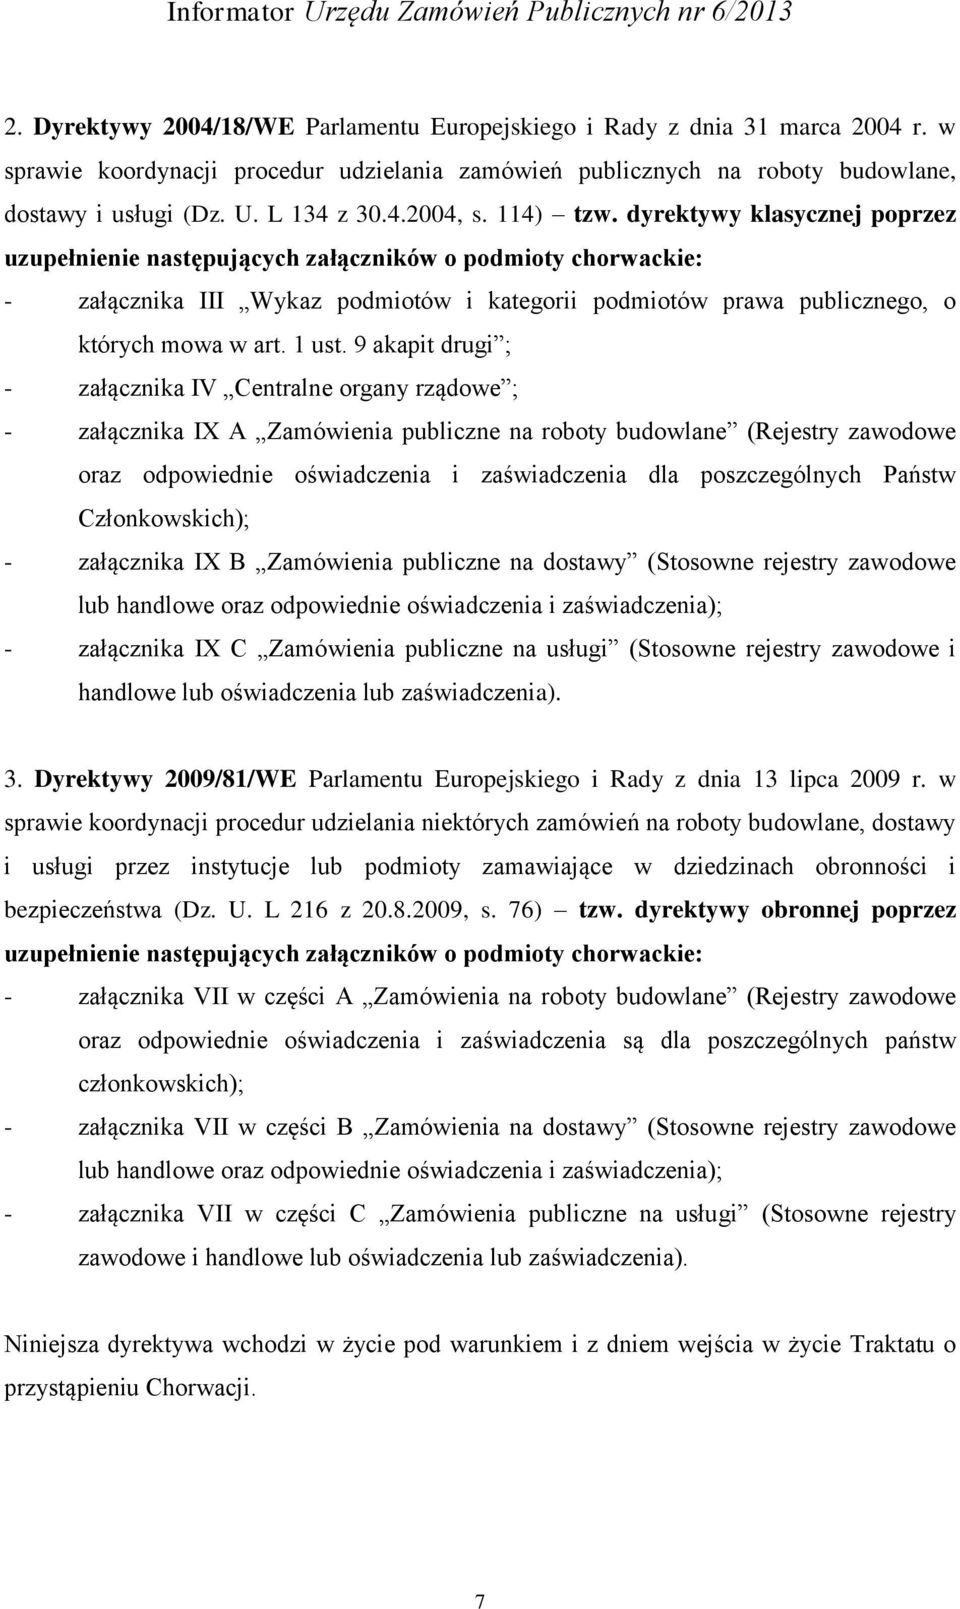 dyrektywy klasycznej poprzez uzupełnienie następujących załączników o podmioty chorwackie: - załącznika III Wykaz podmiotów i kategorii podmiotów prawa publicznego, o których mowa w art. 1 ust.